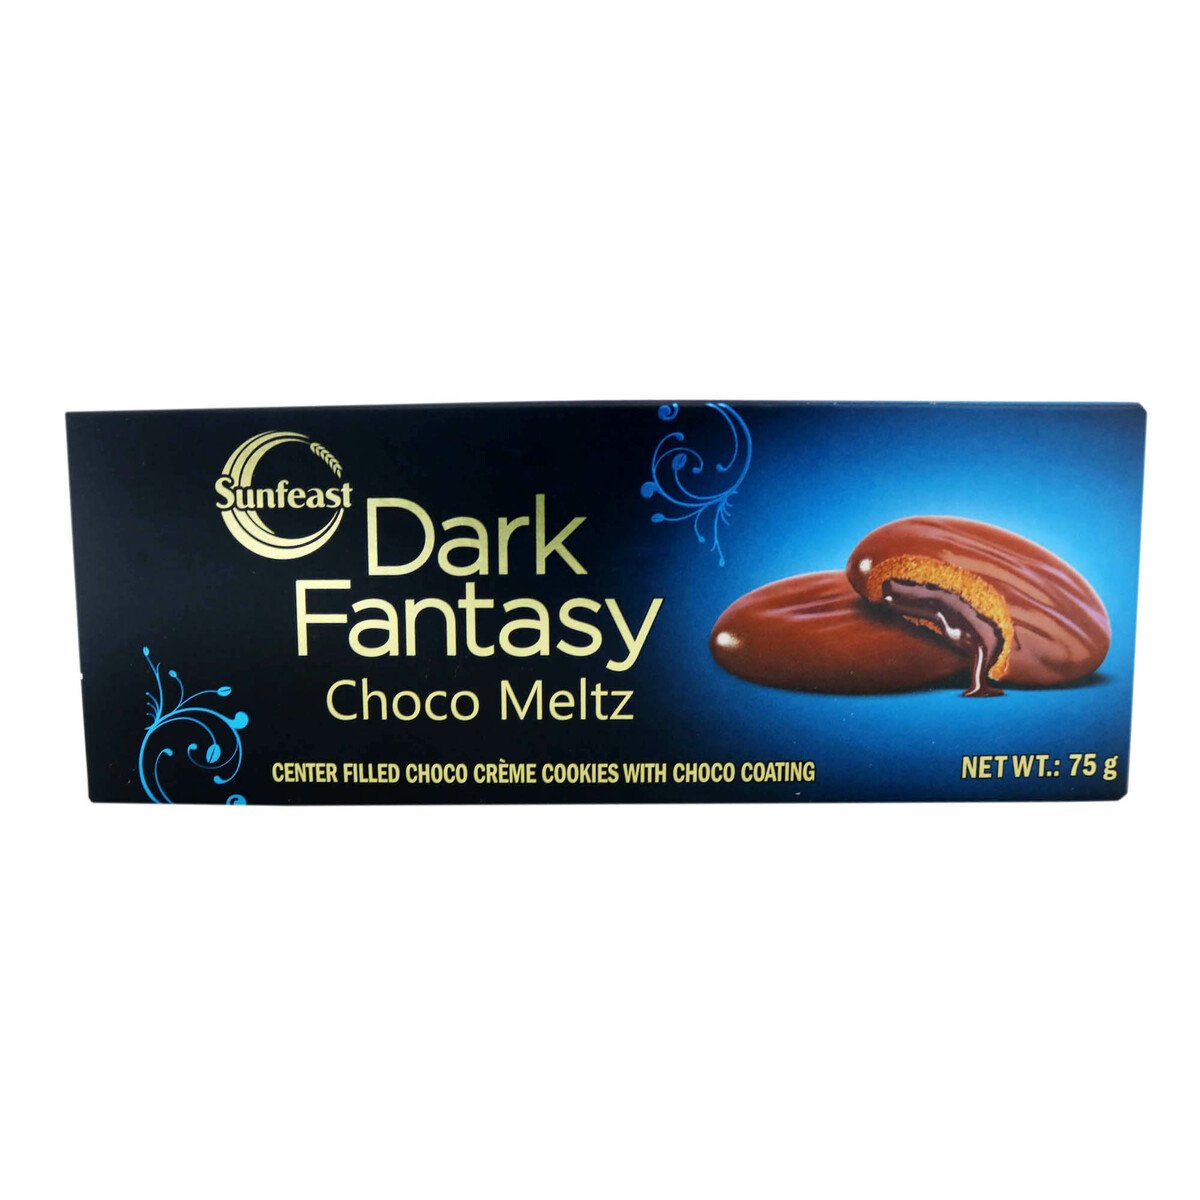 Sunfeast Dark Fantasy Choco Meltz Biscuits 75g